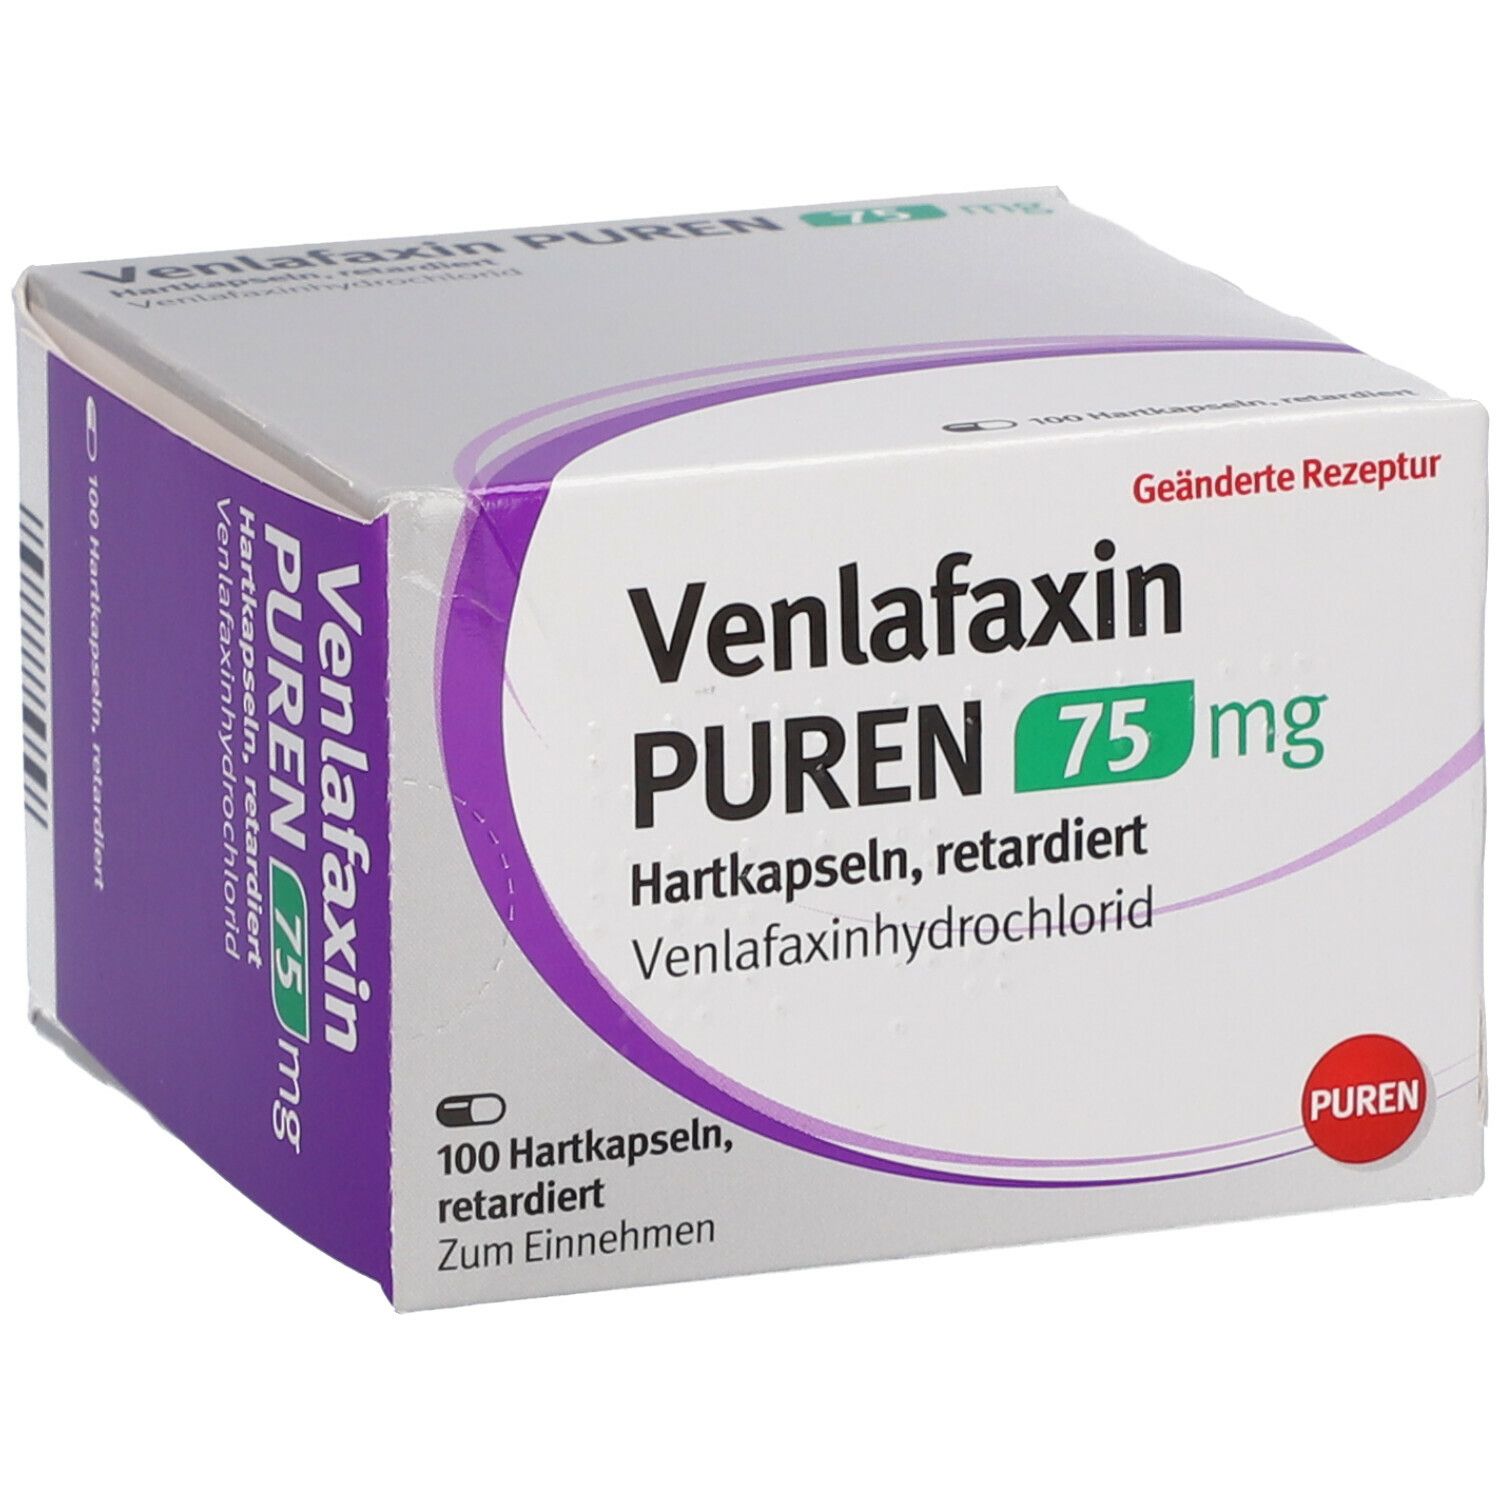 Venlafaxin PUREN 75 mg